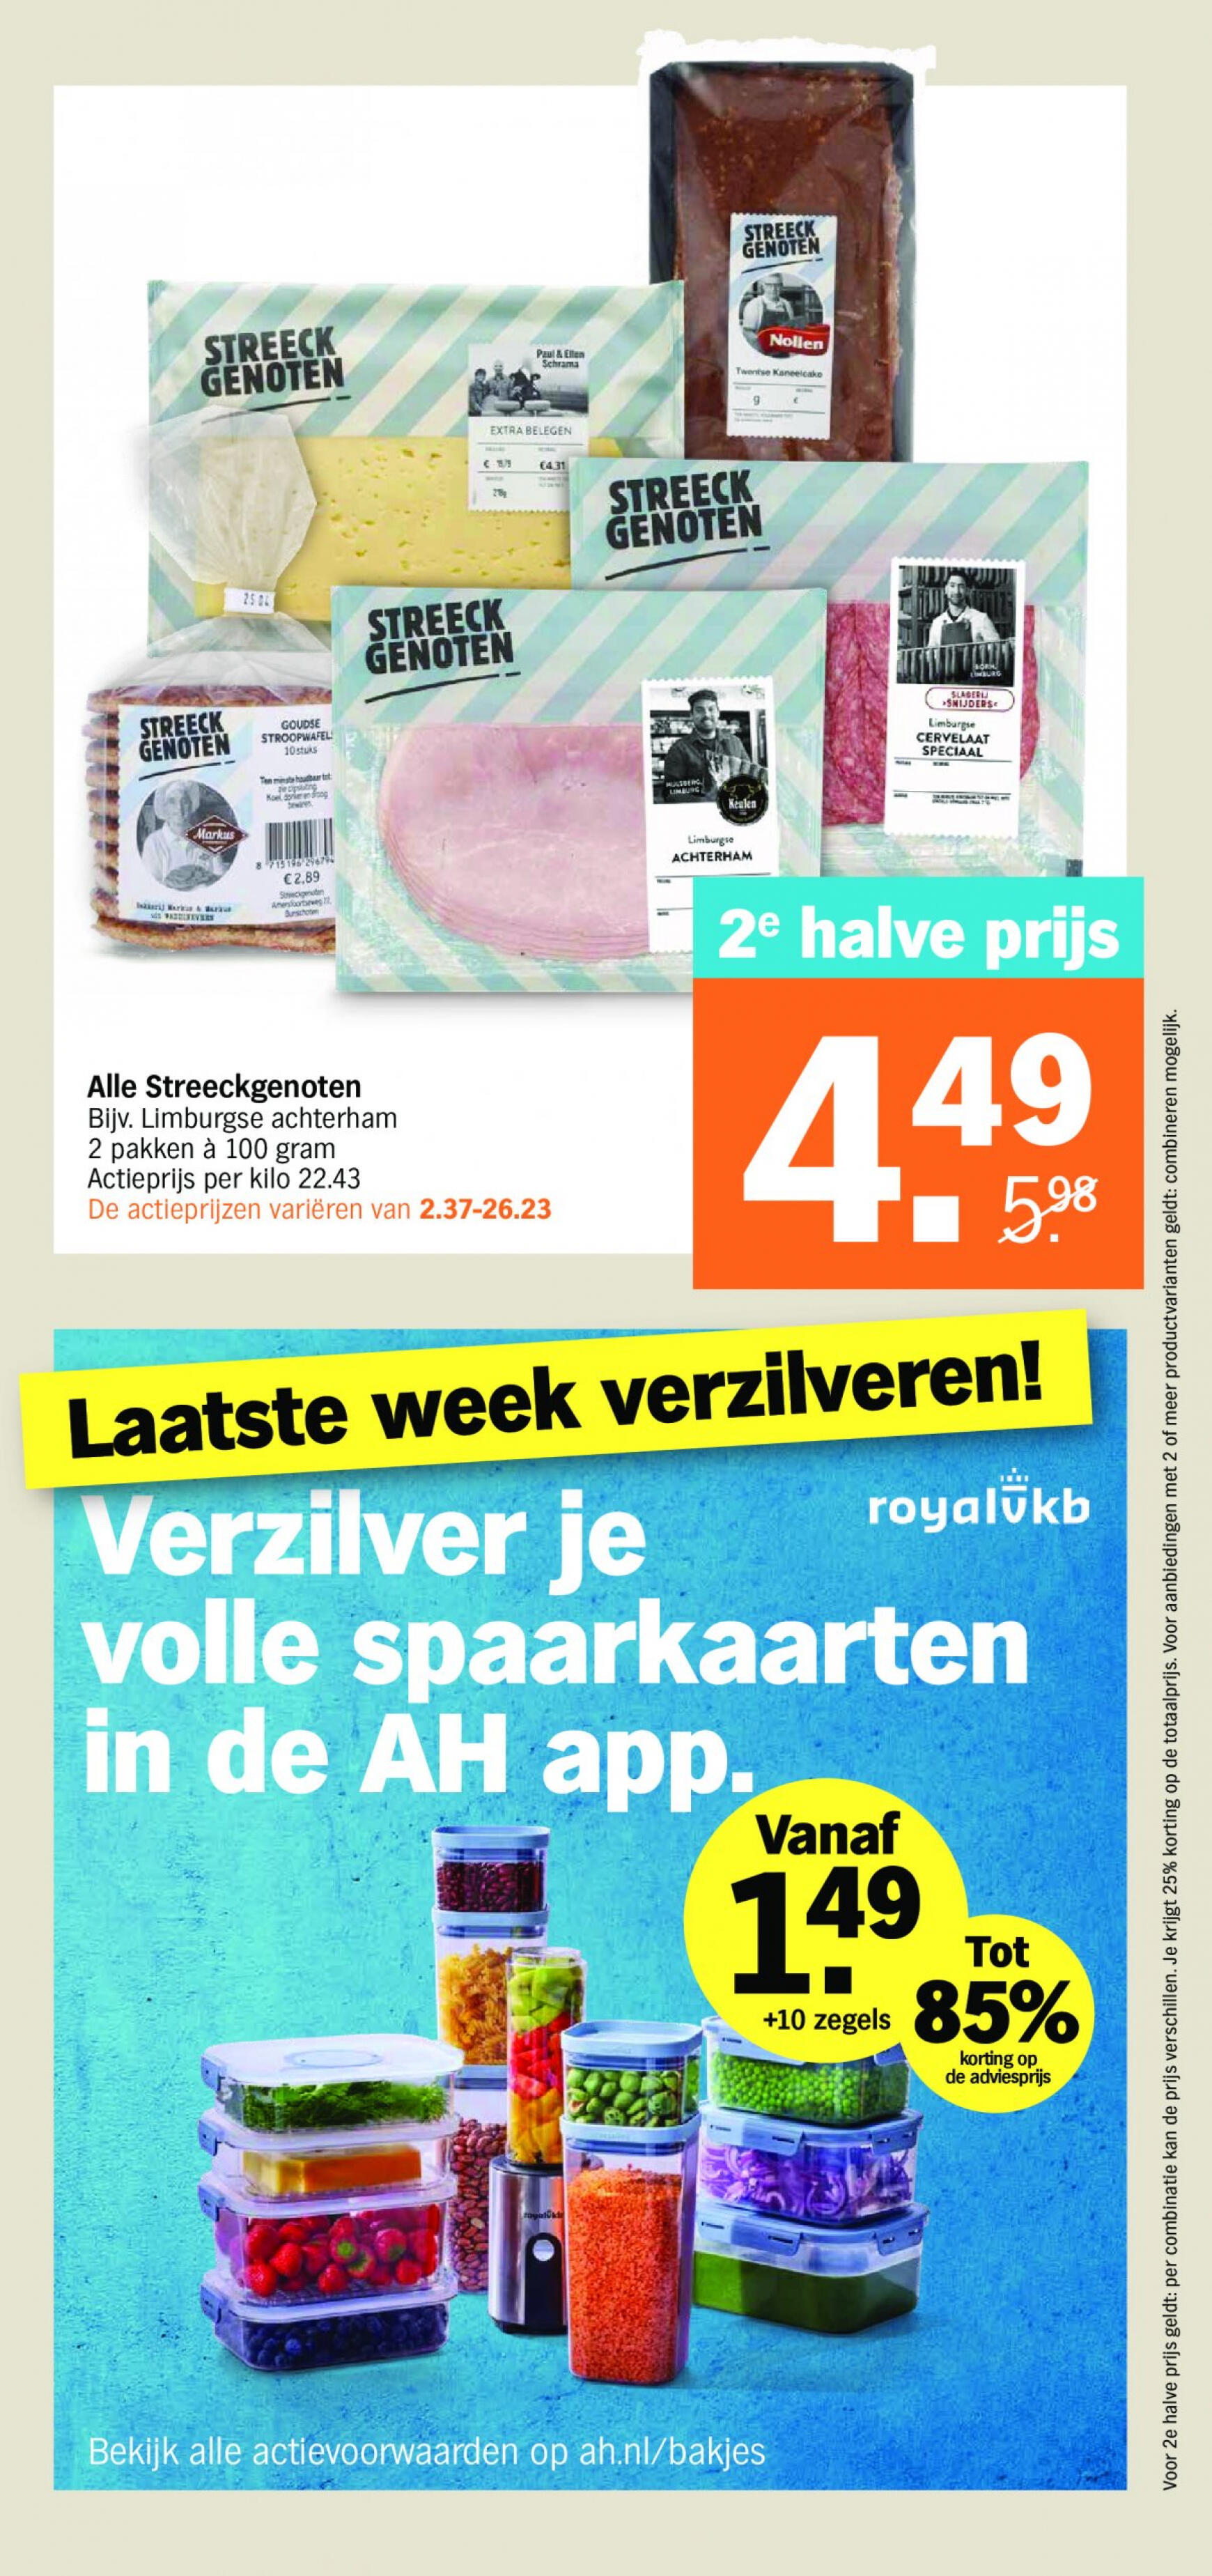 albert-heijn - Albert Heijn folder huidig 13.05. - 20.05. - page: 17